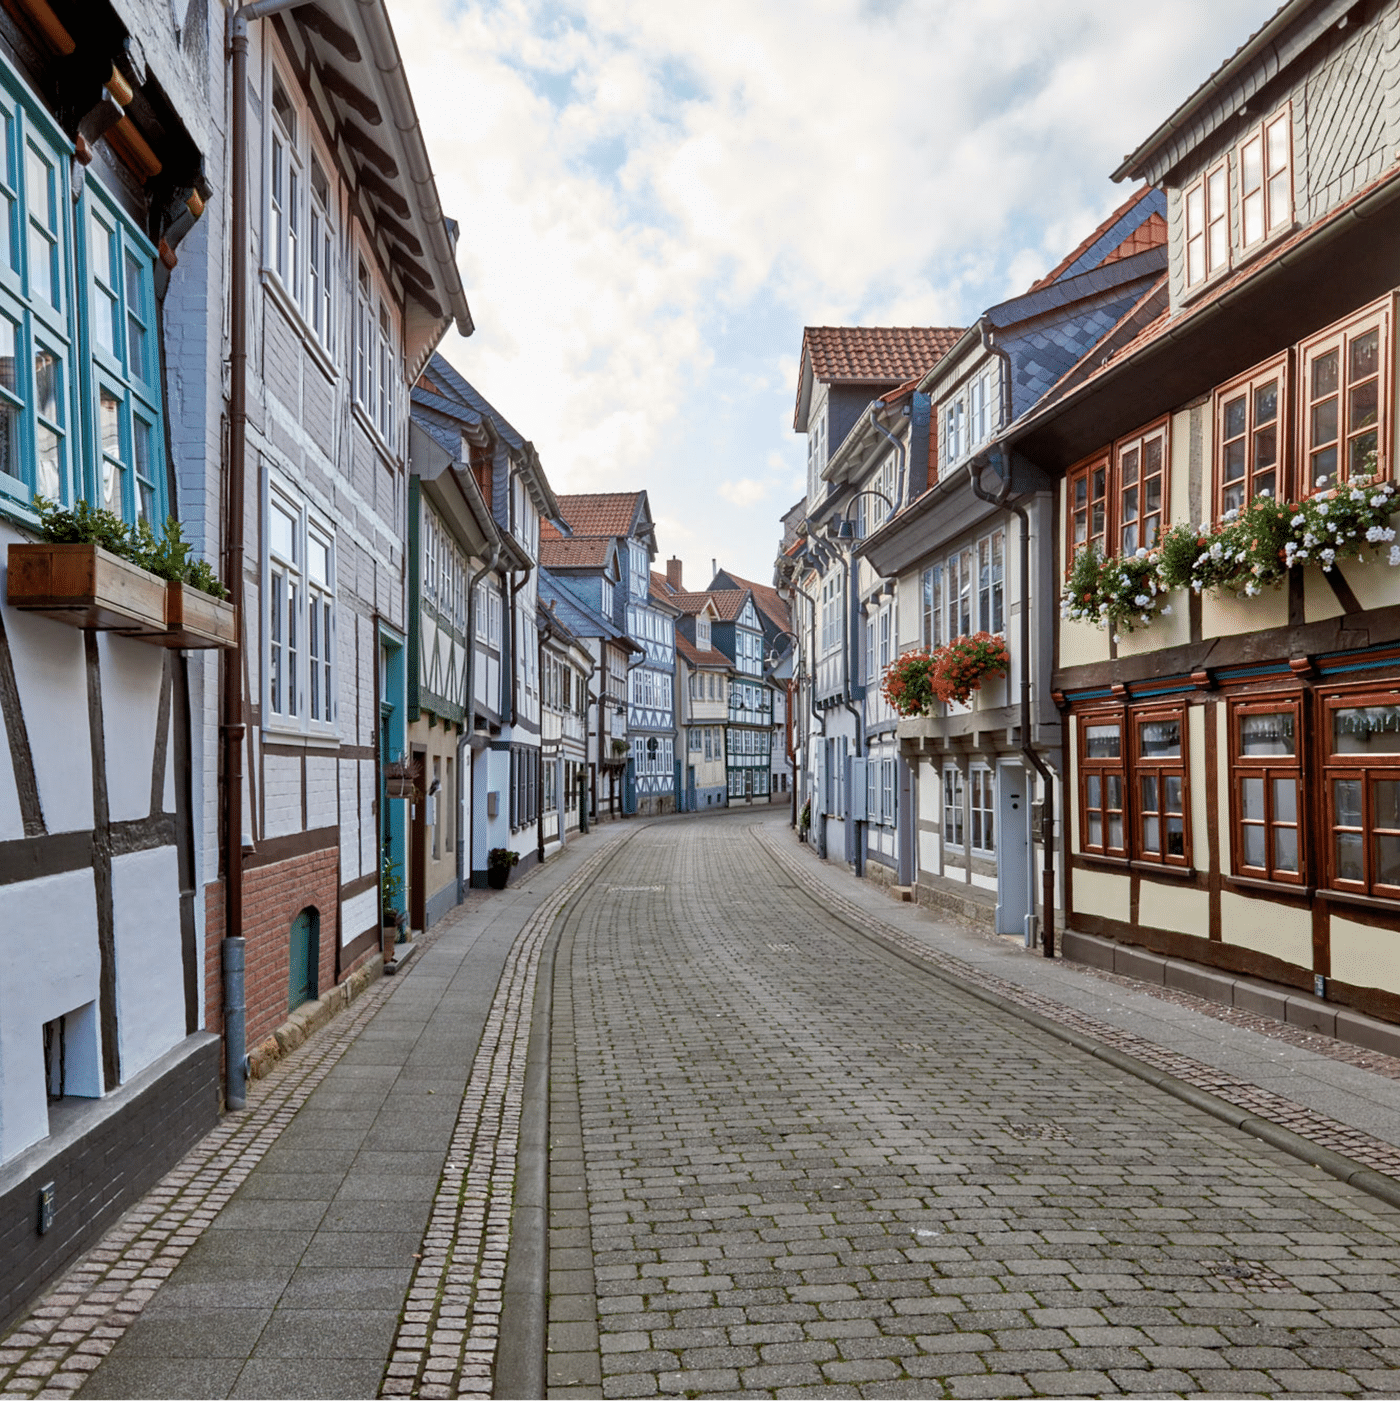 Wolfenbüttel: Delicias culinarias y lugares culturales destacados